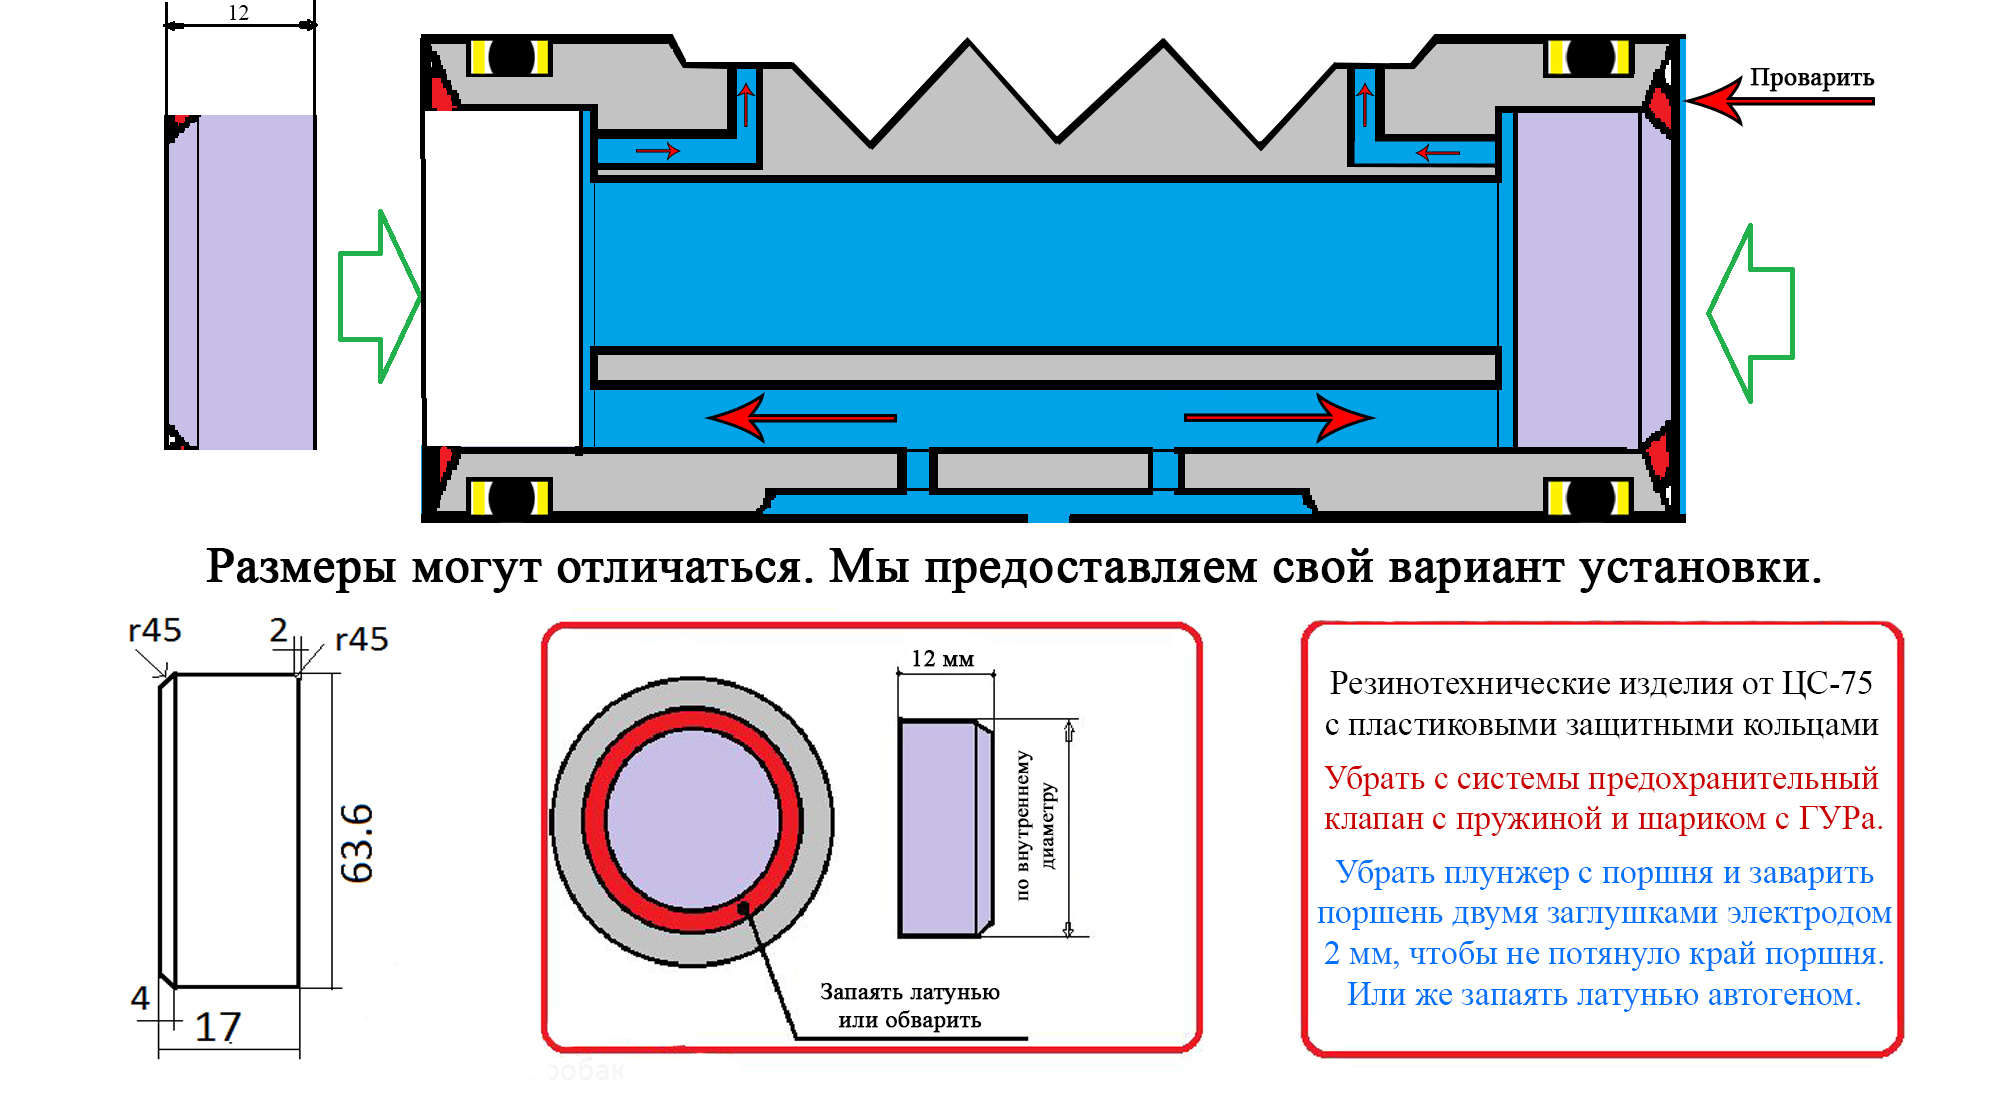 Процесс переоборудования ГОРУ Т-40